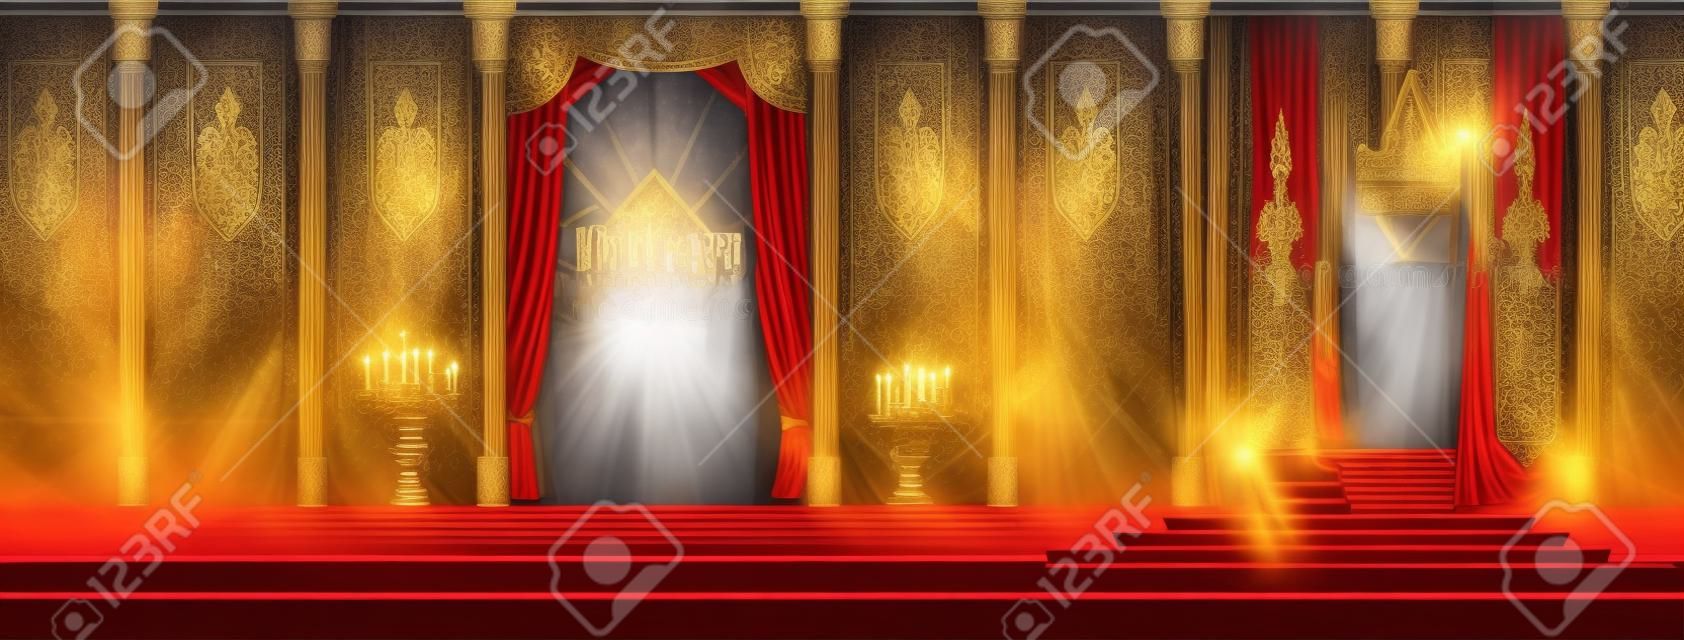 Średniowieczny zamek przestronna sala tronowa lub sala balowa wektor wnętrza kreskówki. Ścieżka czerwonego dywanu do tronu króla na piedestale, zasłony na oknie, flagi z godłem królewskim na ścianach, ilustracja zbroi rycerzy